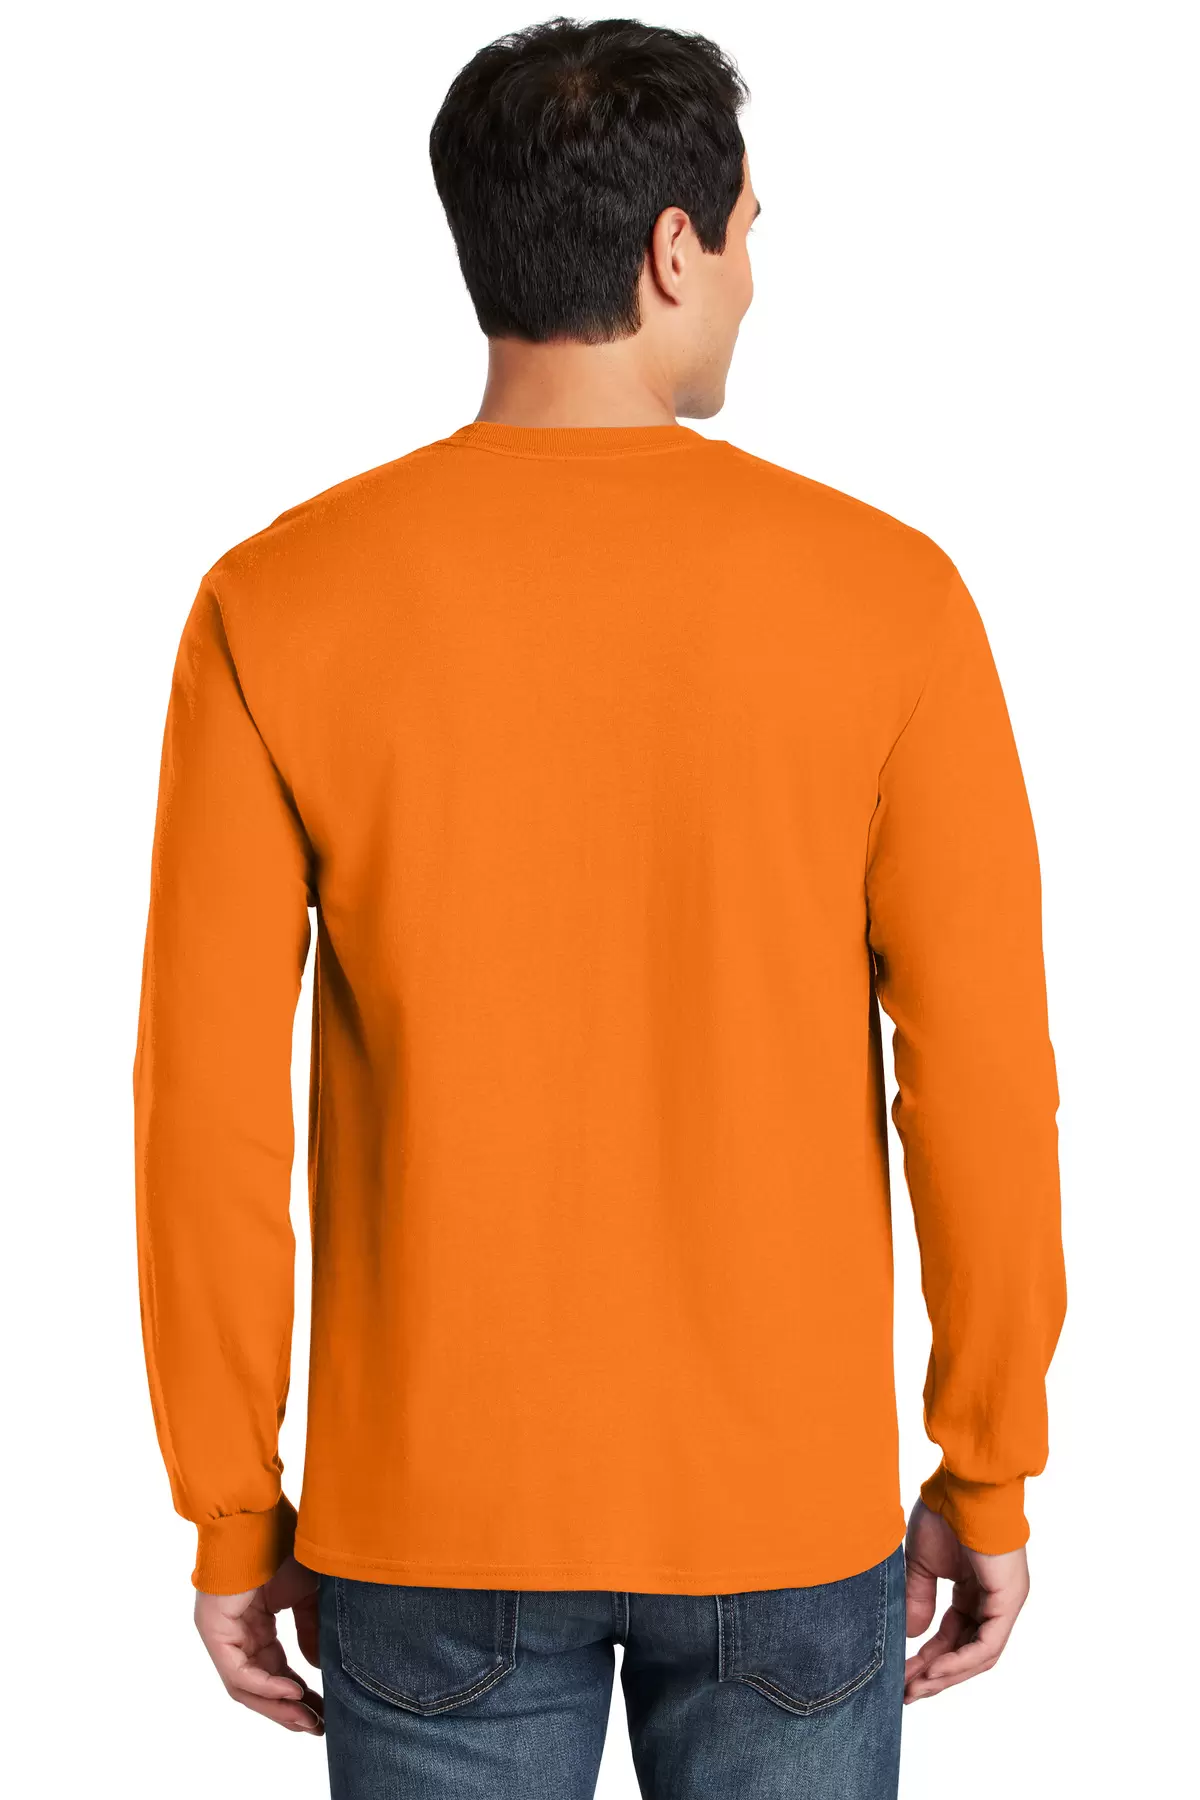 Gildan Men's Ultra Cotton Long Sleeve T-Shirt, Style G2400 